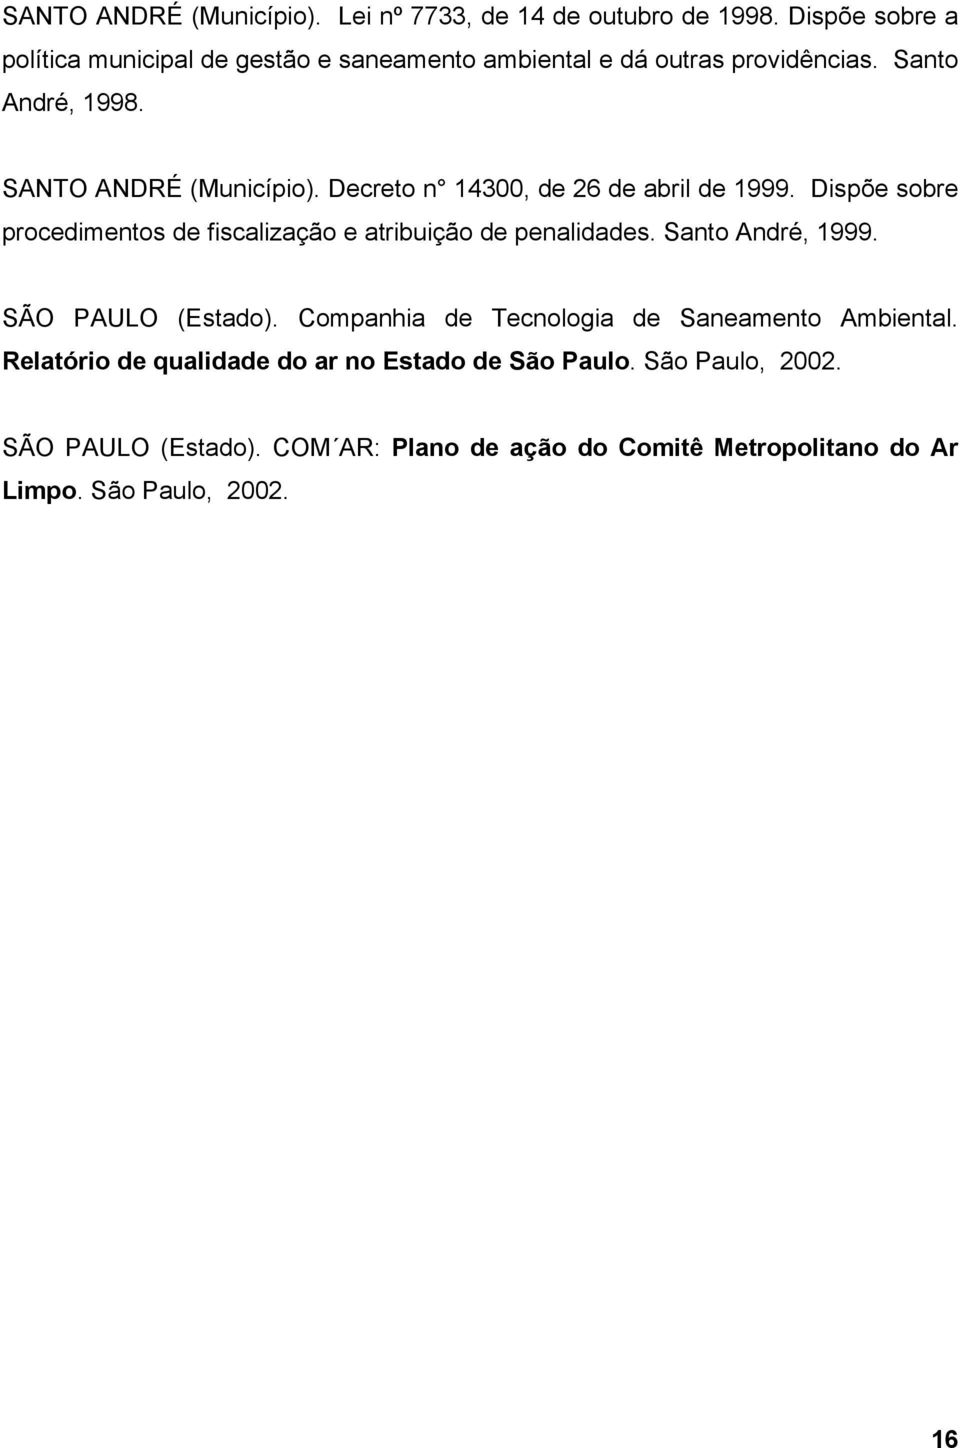 Decreto n 14300, de 26 de abril de 1999. Dispõe sobre procedimentos de fiscalização e atribuição de penalidades. Santo André, 1999.